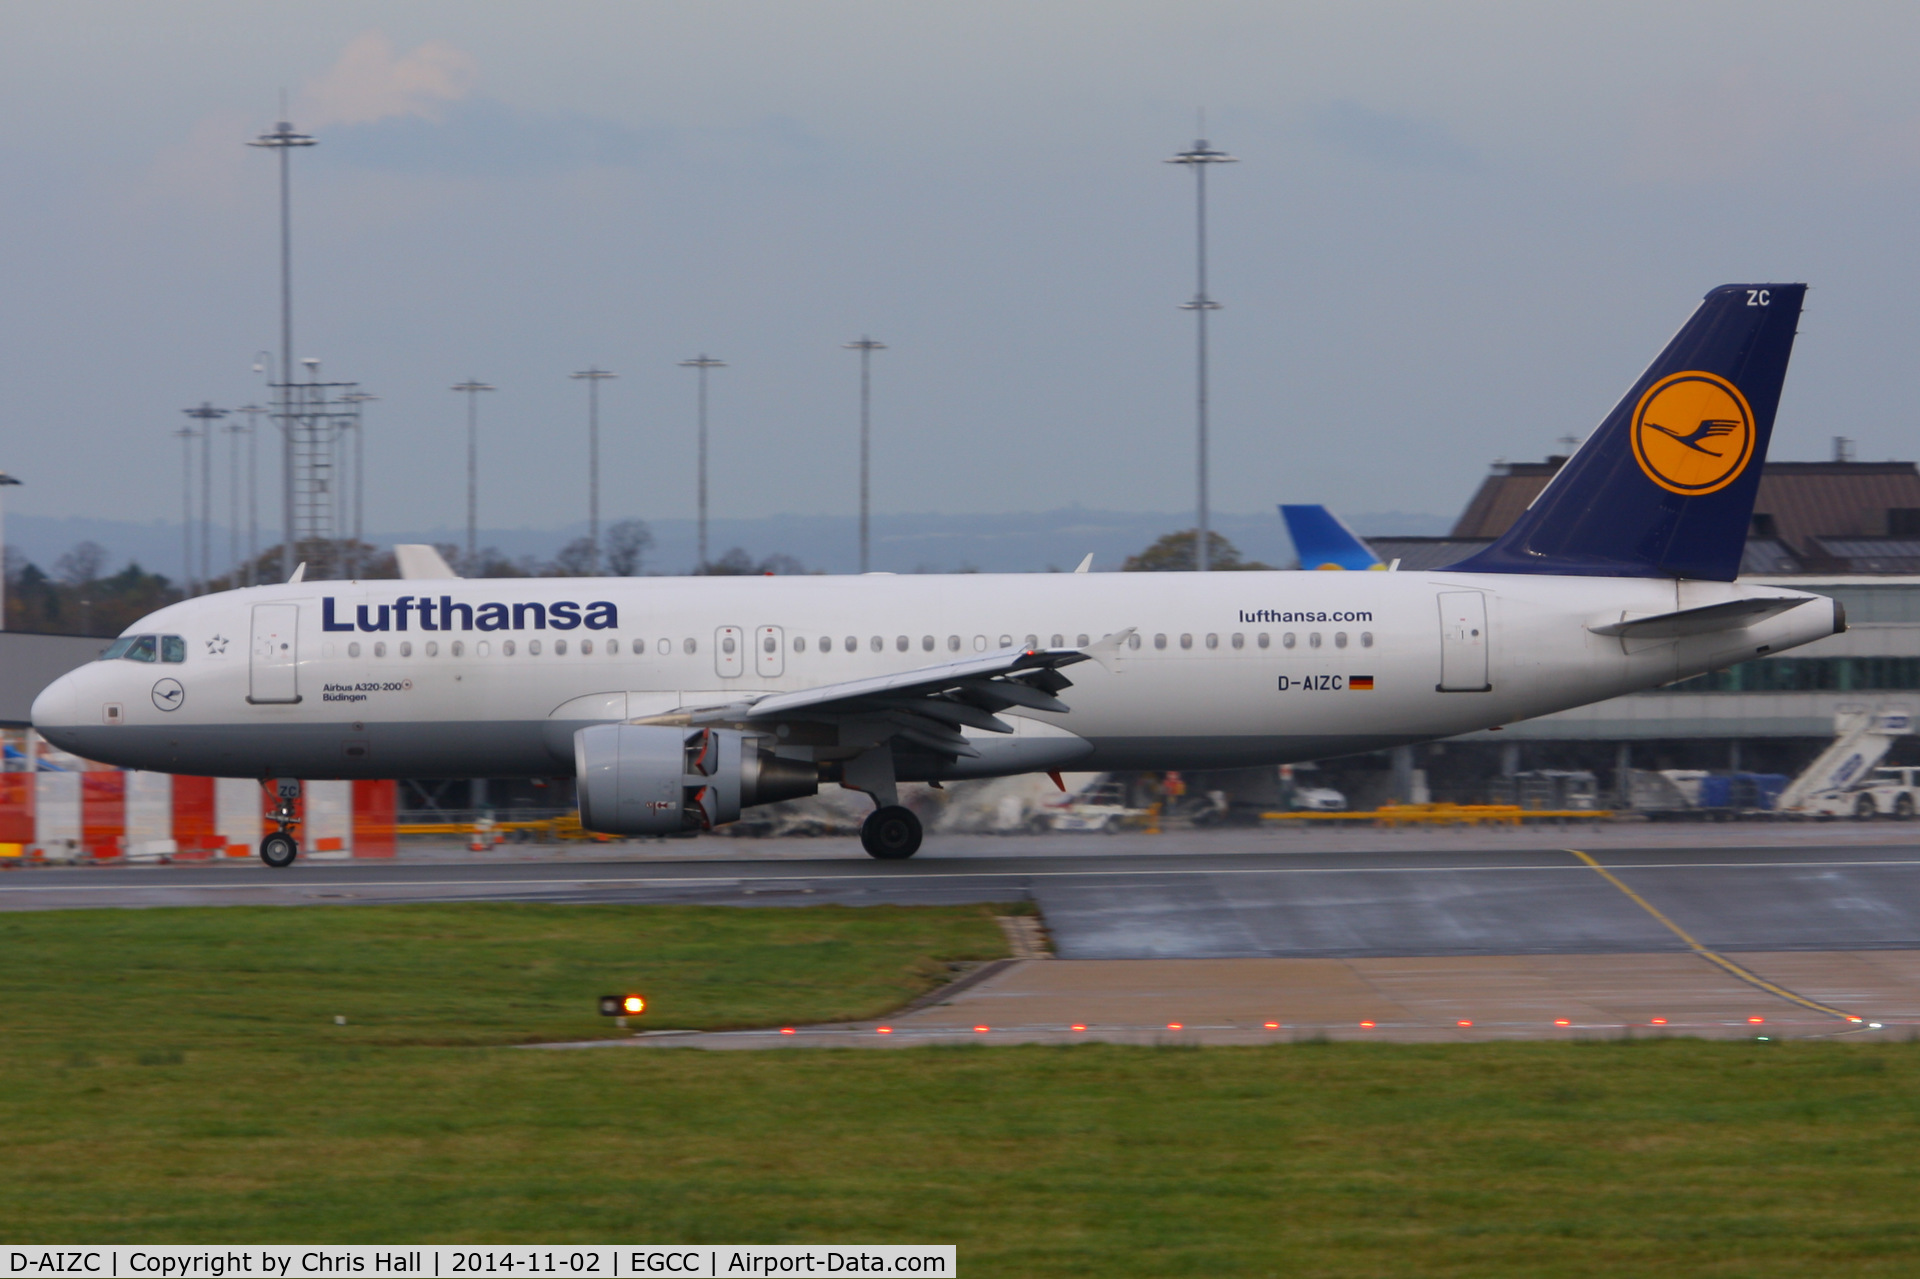 D-AIZC, 2009 Airbus A320-214 C/N 4153, Lufthansa